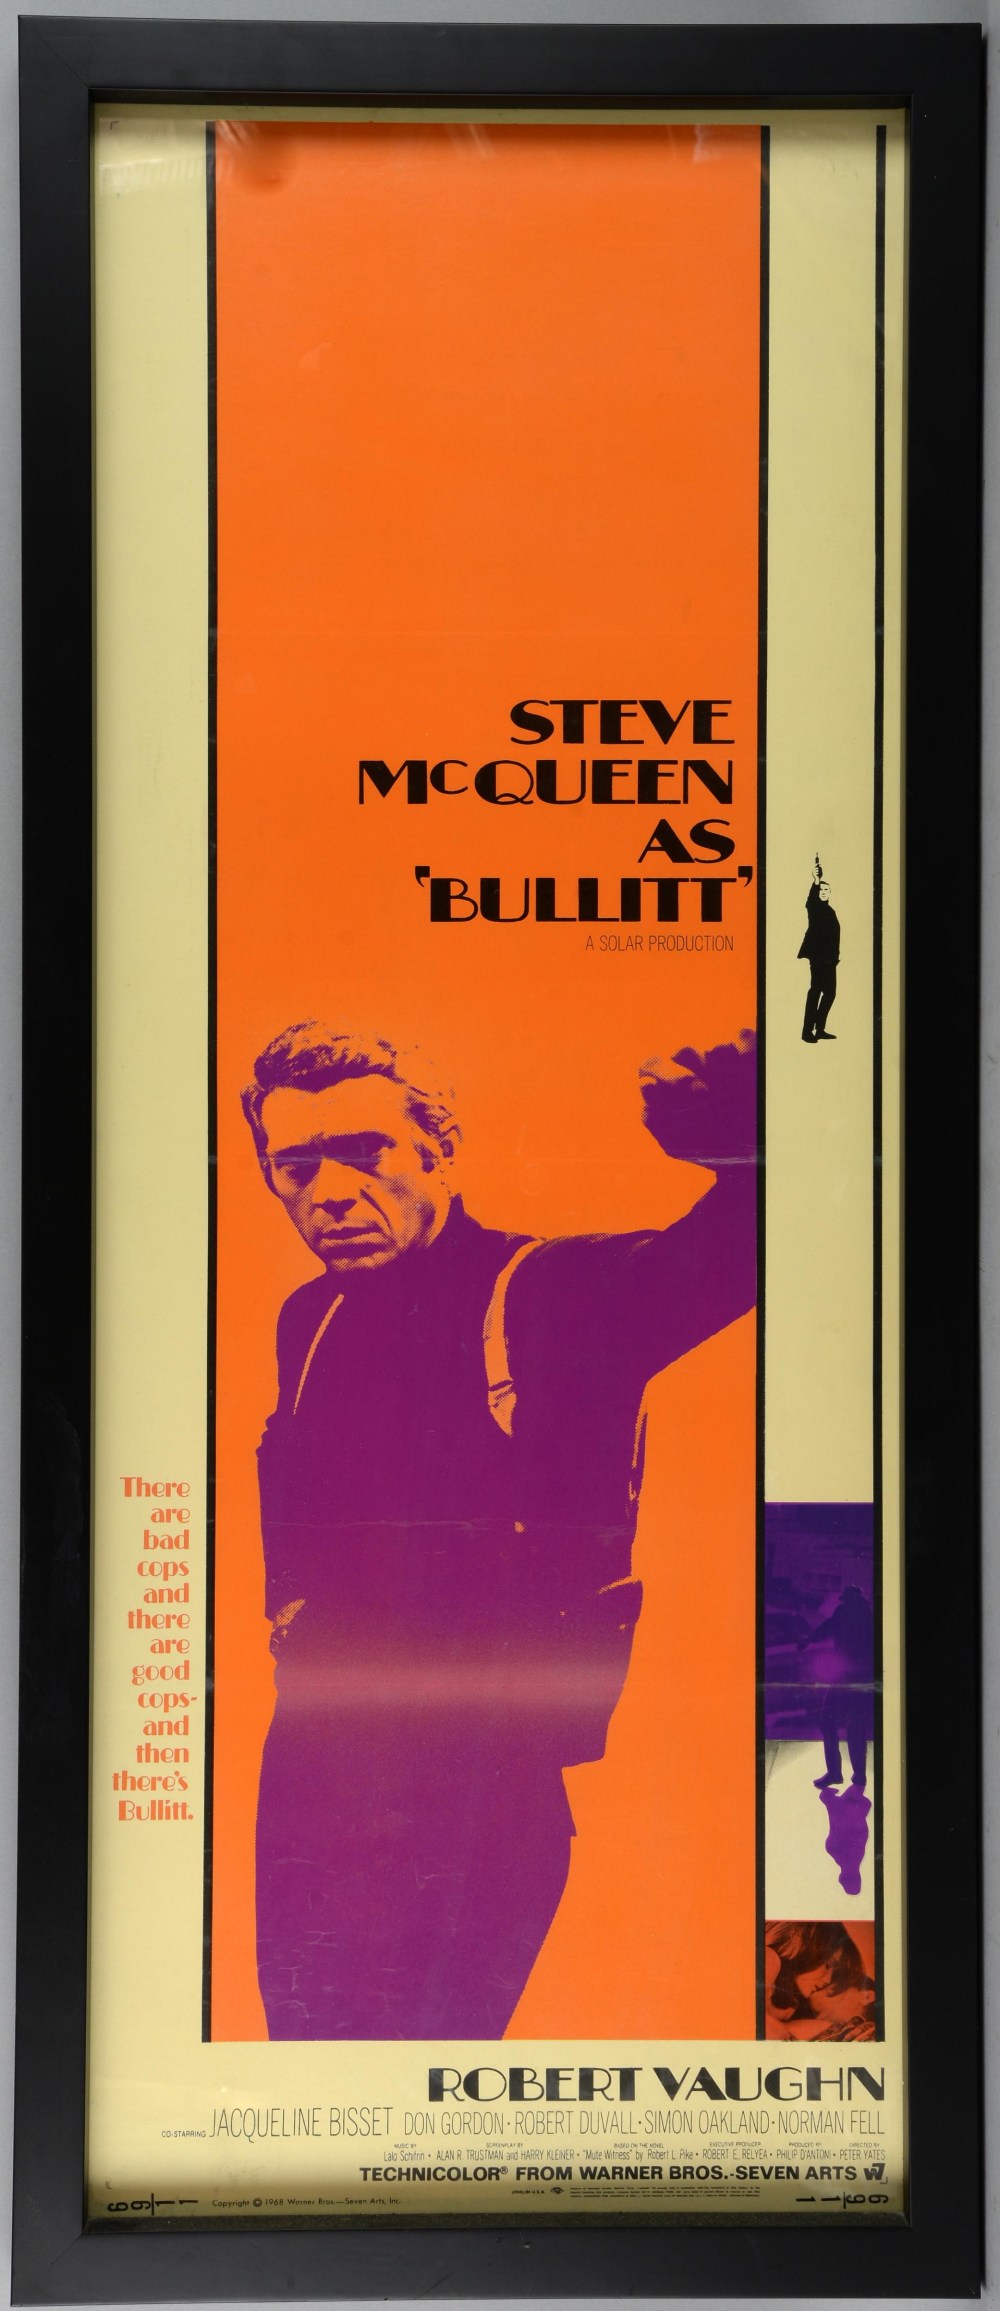 Bullitt (1969) US Insert film poster, starring Steve McQueen, Warner Bros - Seven Arts, framed, 14 x - Image 2 of 2